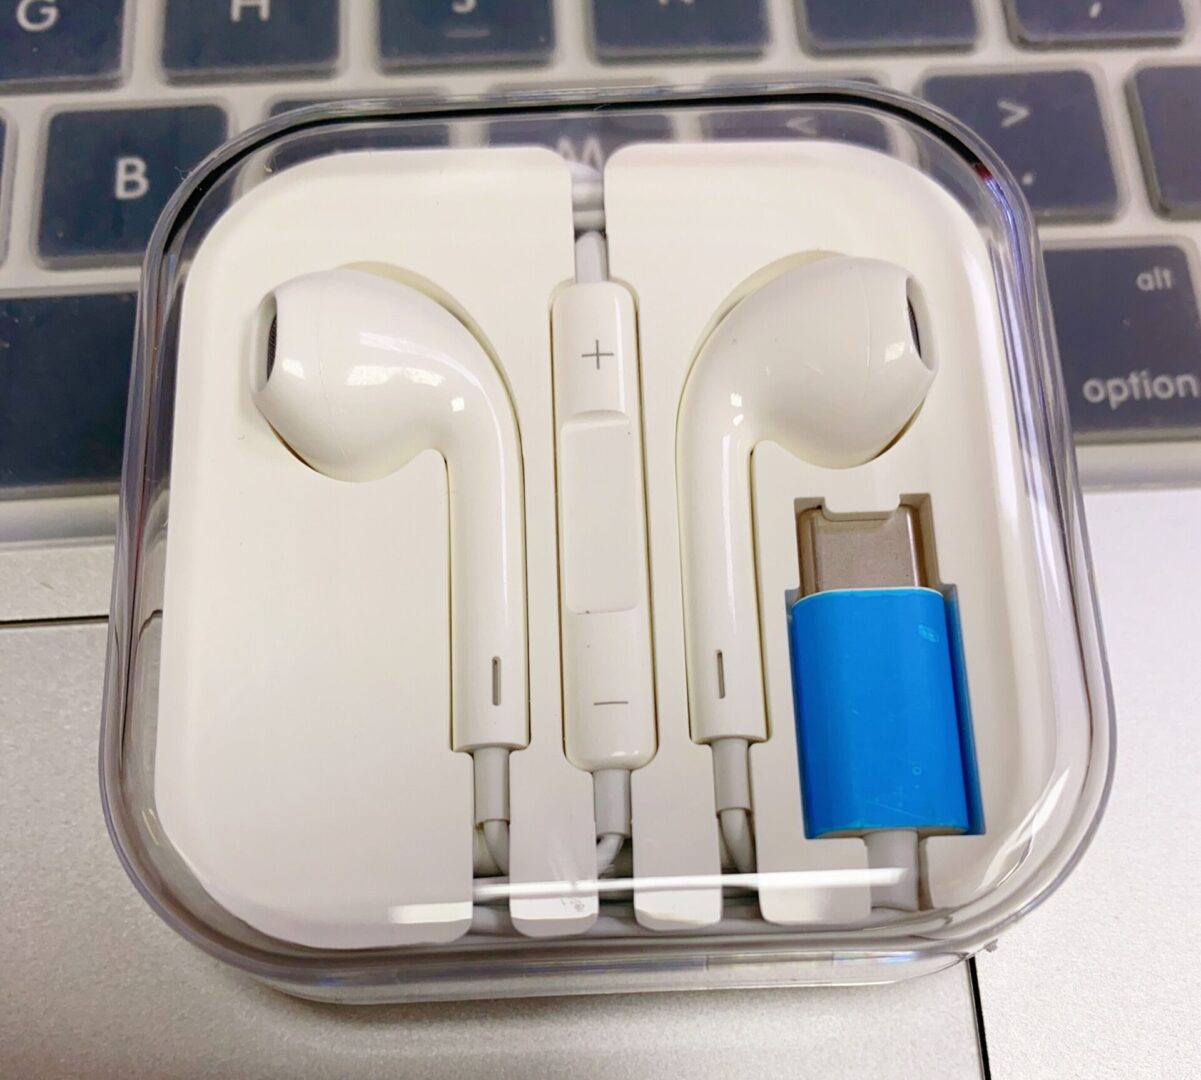 An apple earphone inside its case